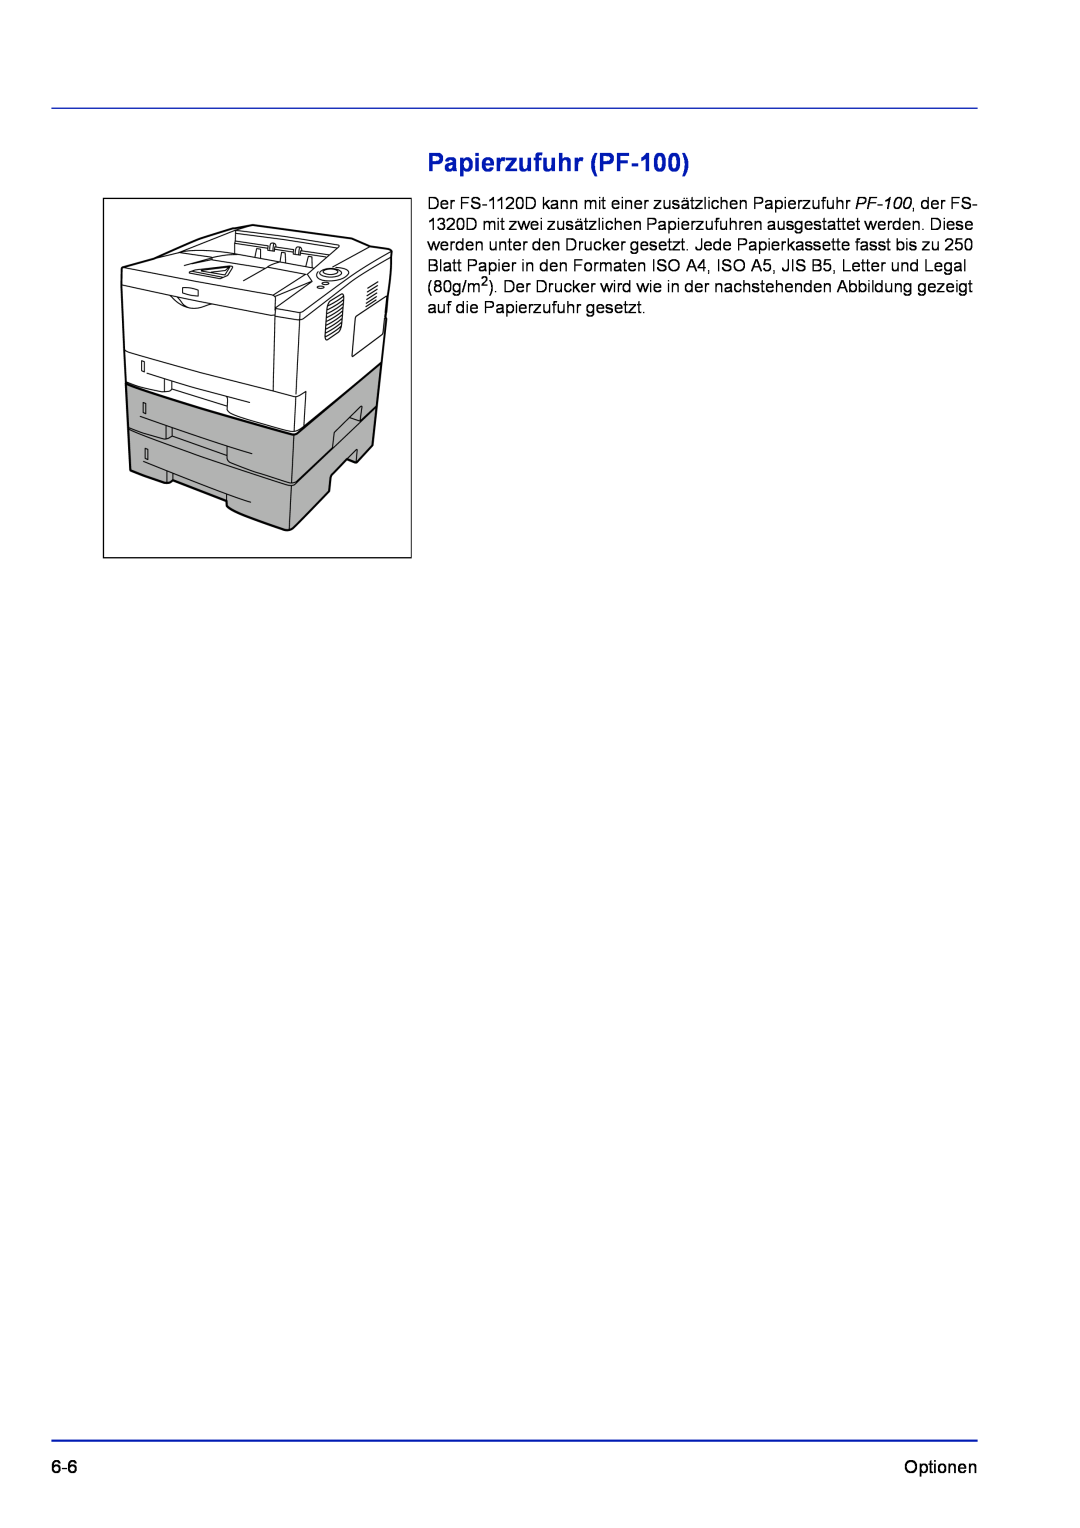 Kyocera FS-1120D, FS-1320D manual Papierzufuhr PF-100 